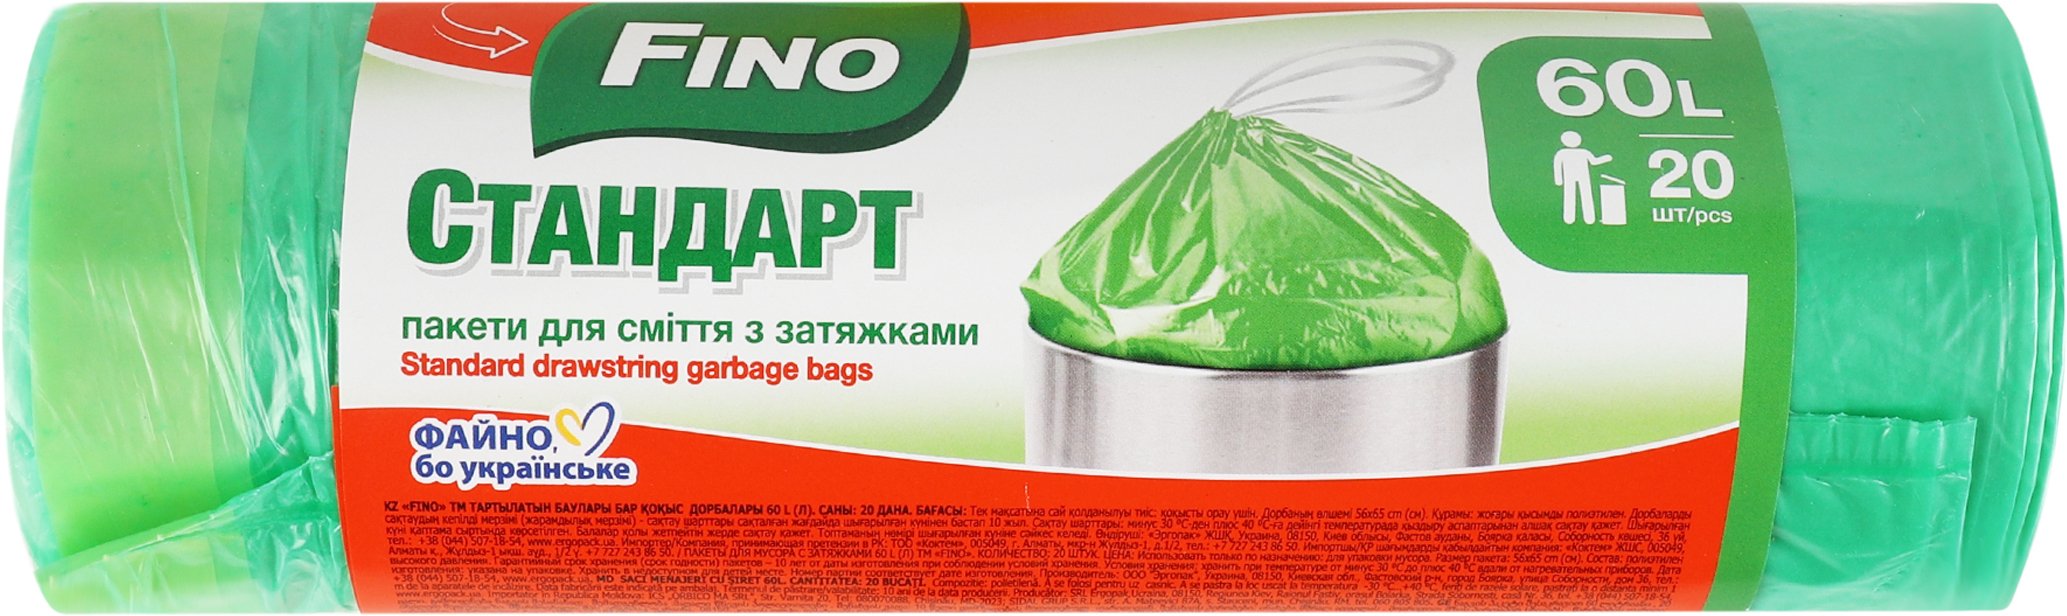 Пакети для сміття із затяжкою Fino Cтандарт 60л*20штфото2